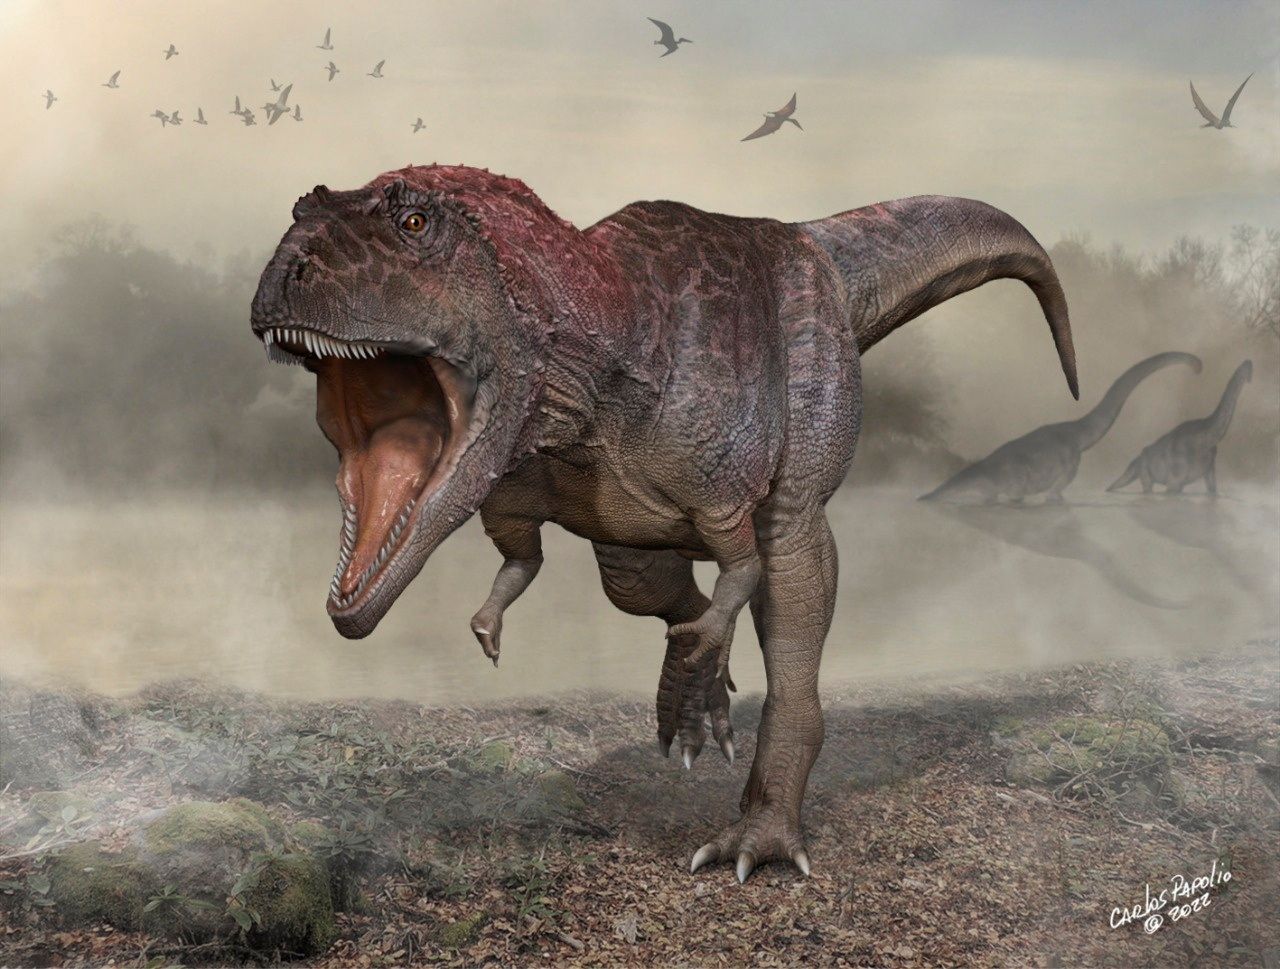 Vědci objevili nový druh dinosaura. Měl mohutnou hlavou a kratičké končetiny